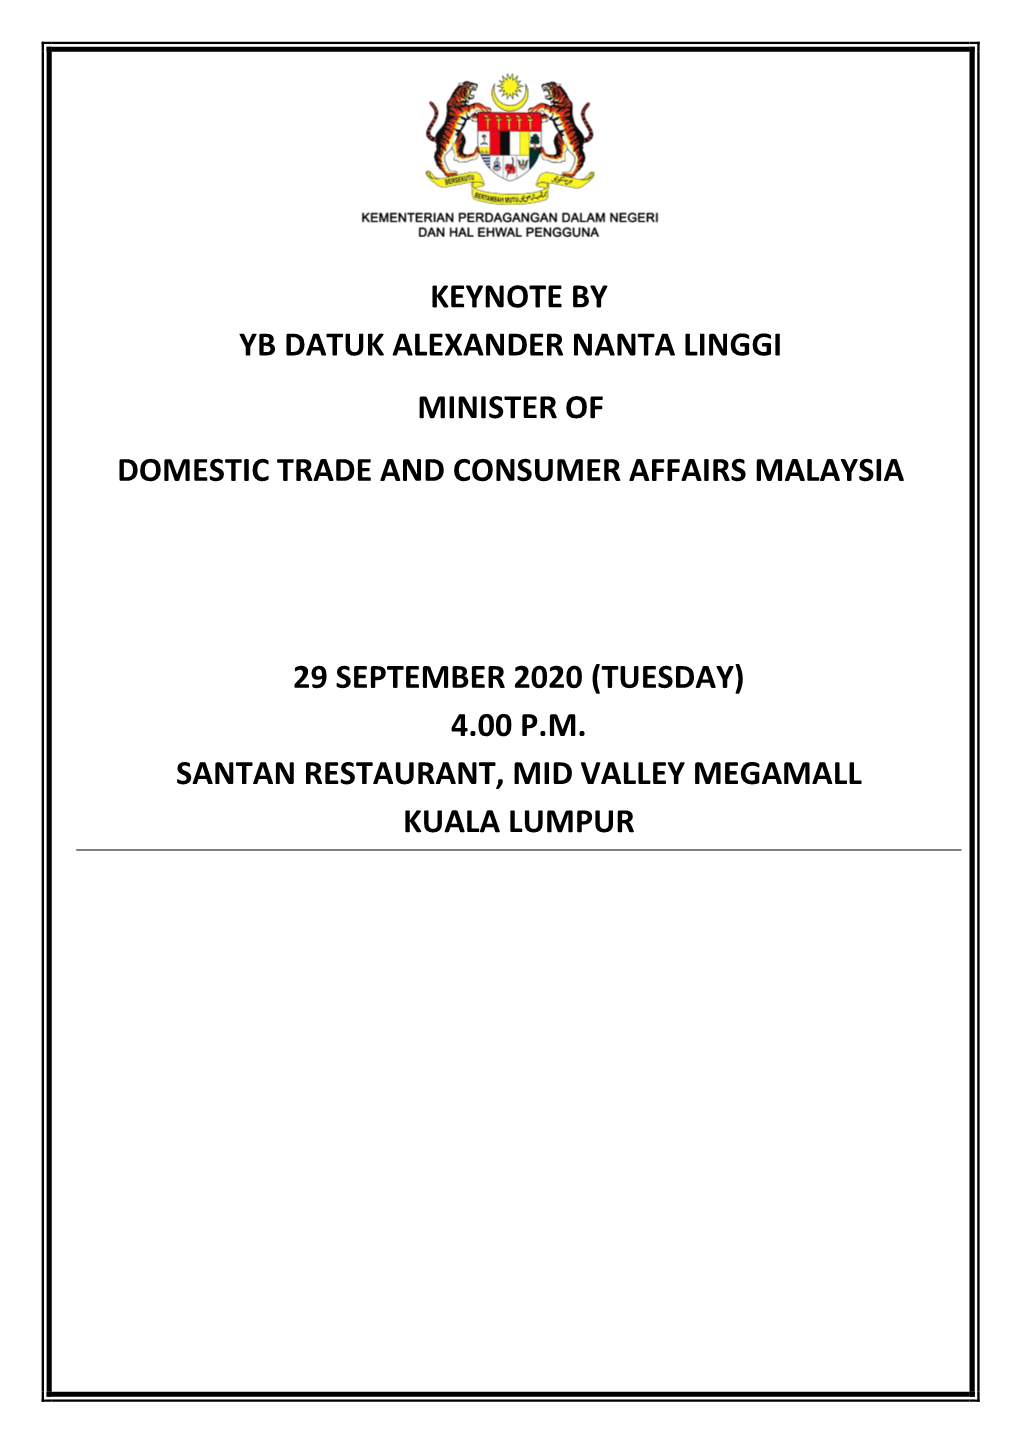 Keynote by Yb Datuk Alexander Nanta Linggi Minister of Domestic Trade and Consumer Affairs Malaysia